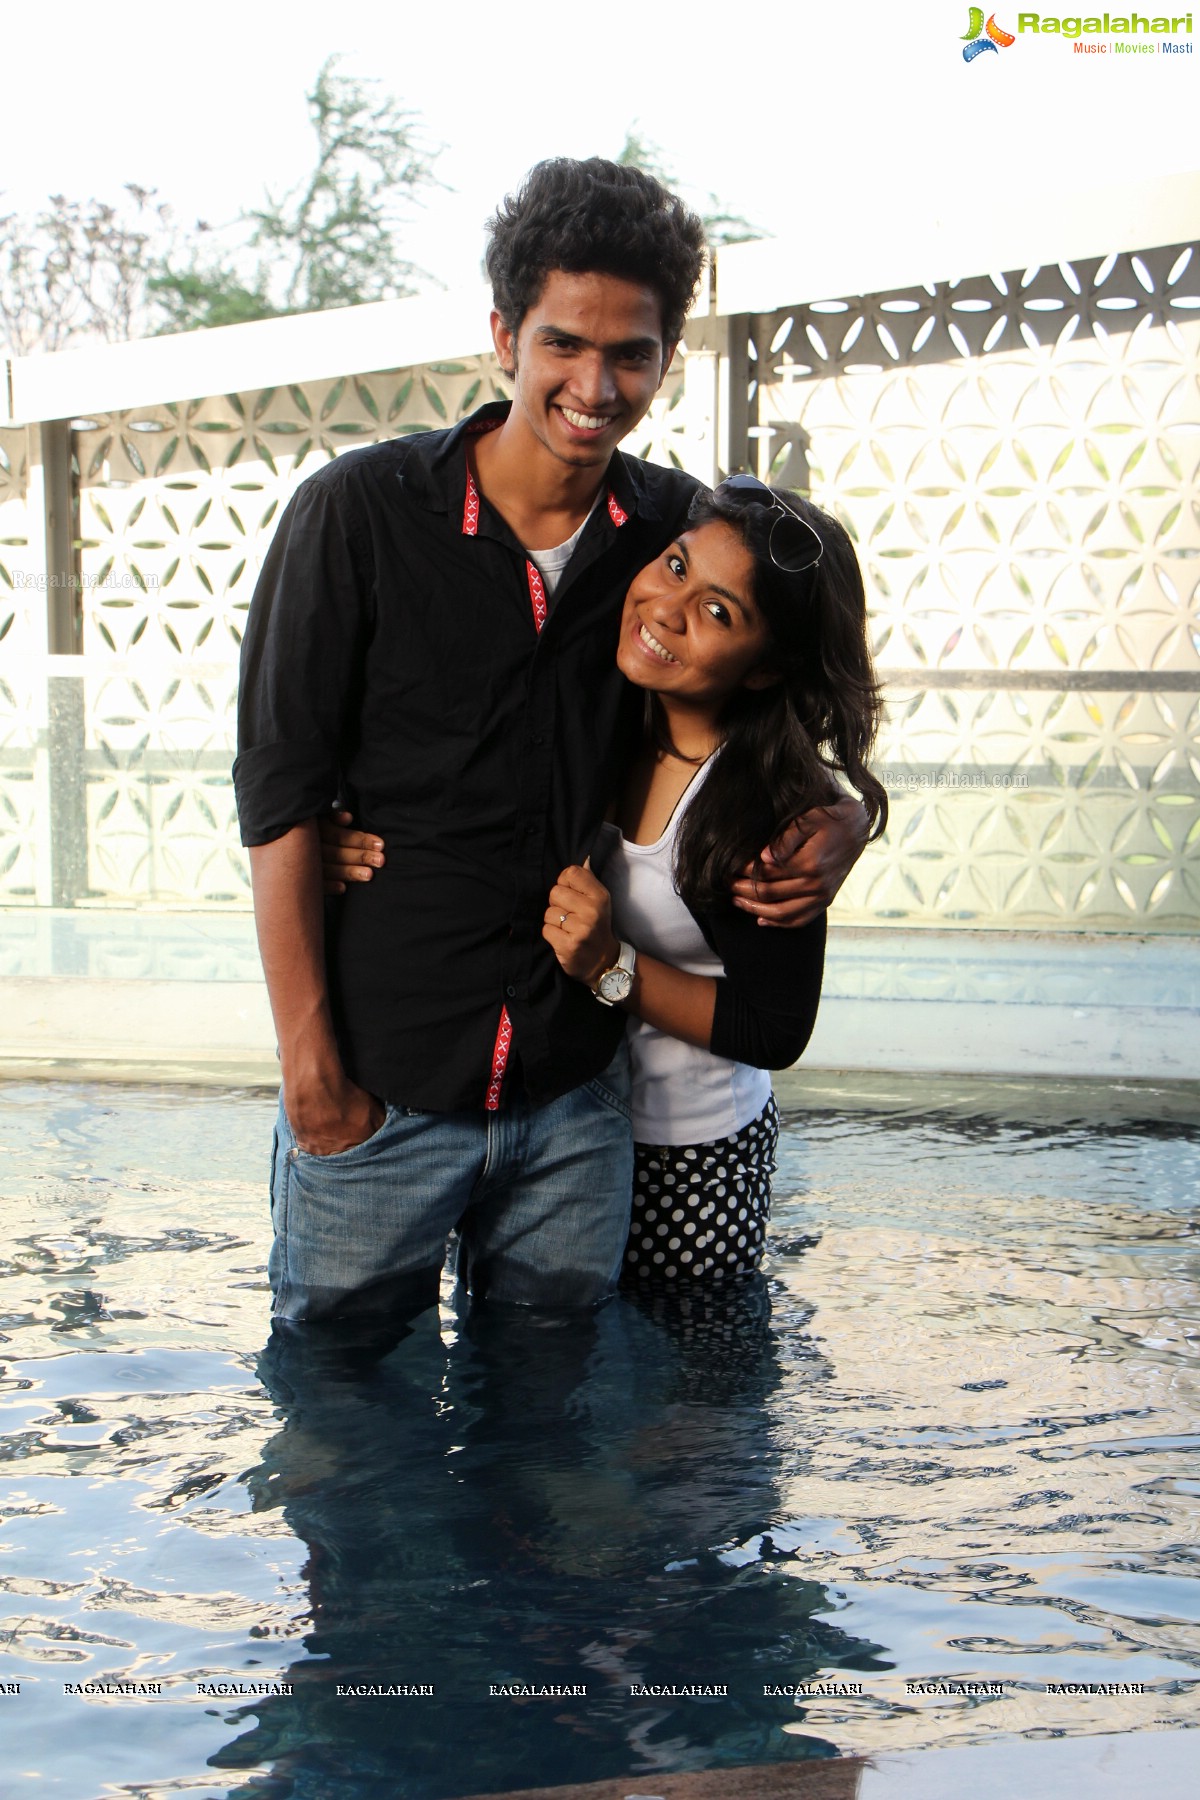 Aqua 3D Pool Party, The Park, Hyderabad (May 25, 2014)